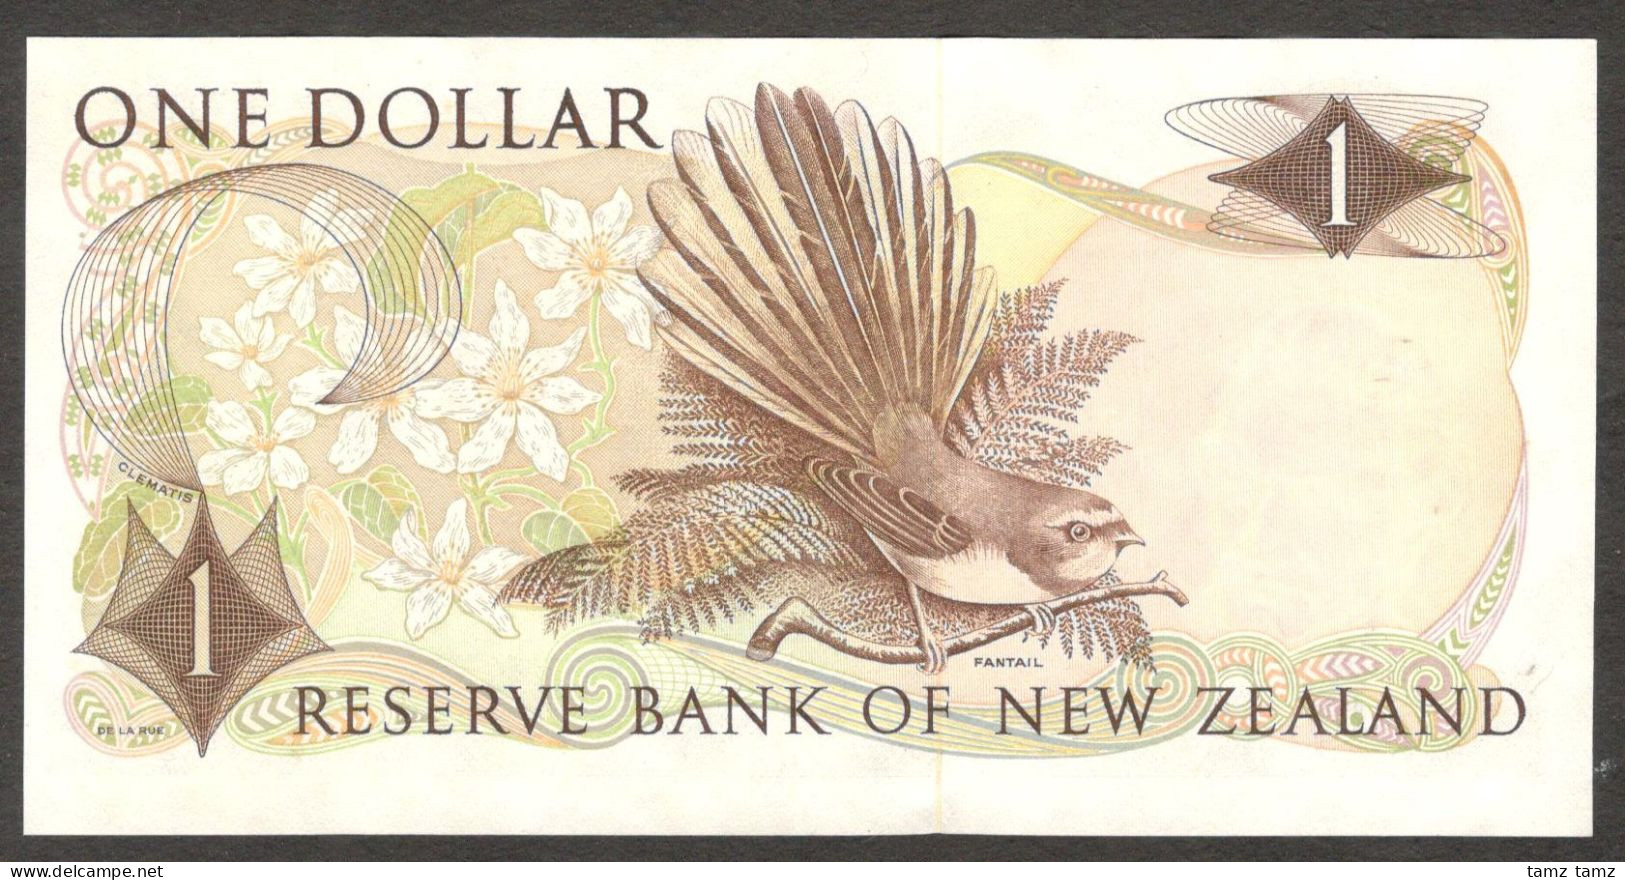 New Zealand 1 Dollar Queen Elizabeth II P-163d 1977-1981 UNC - Nieuw-Zeeland